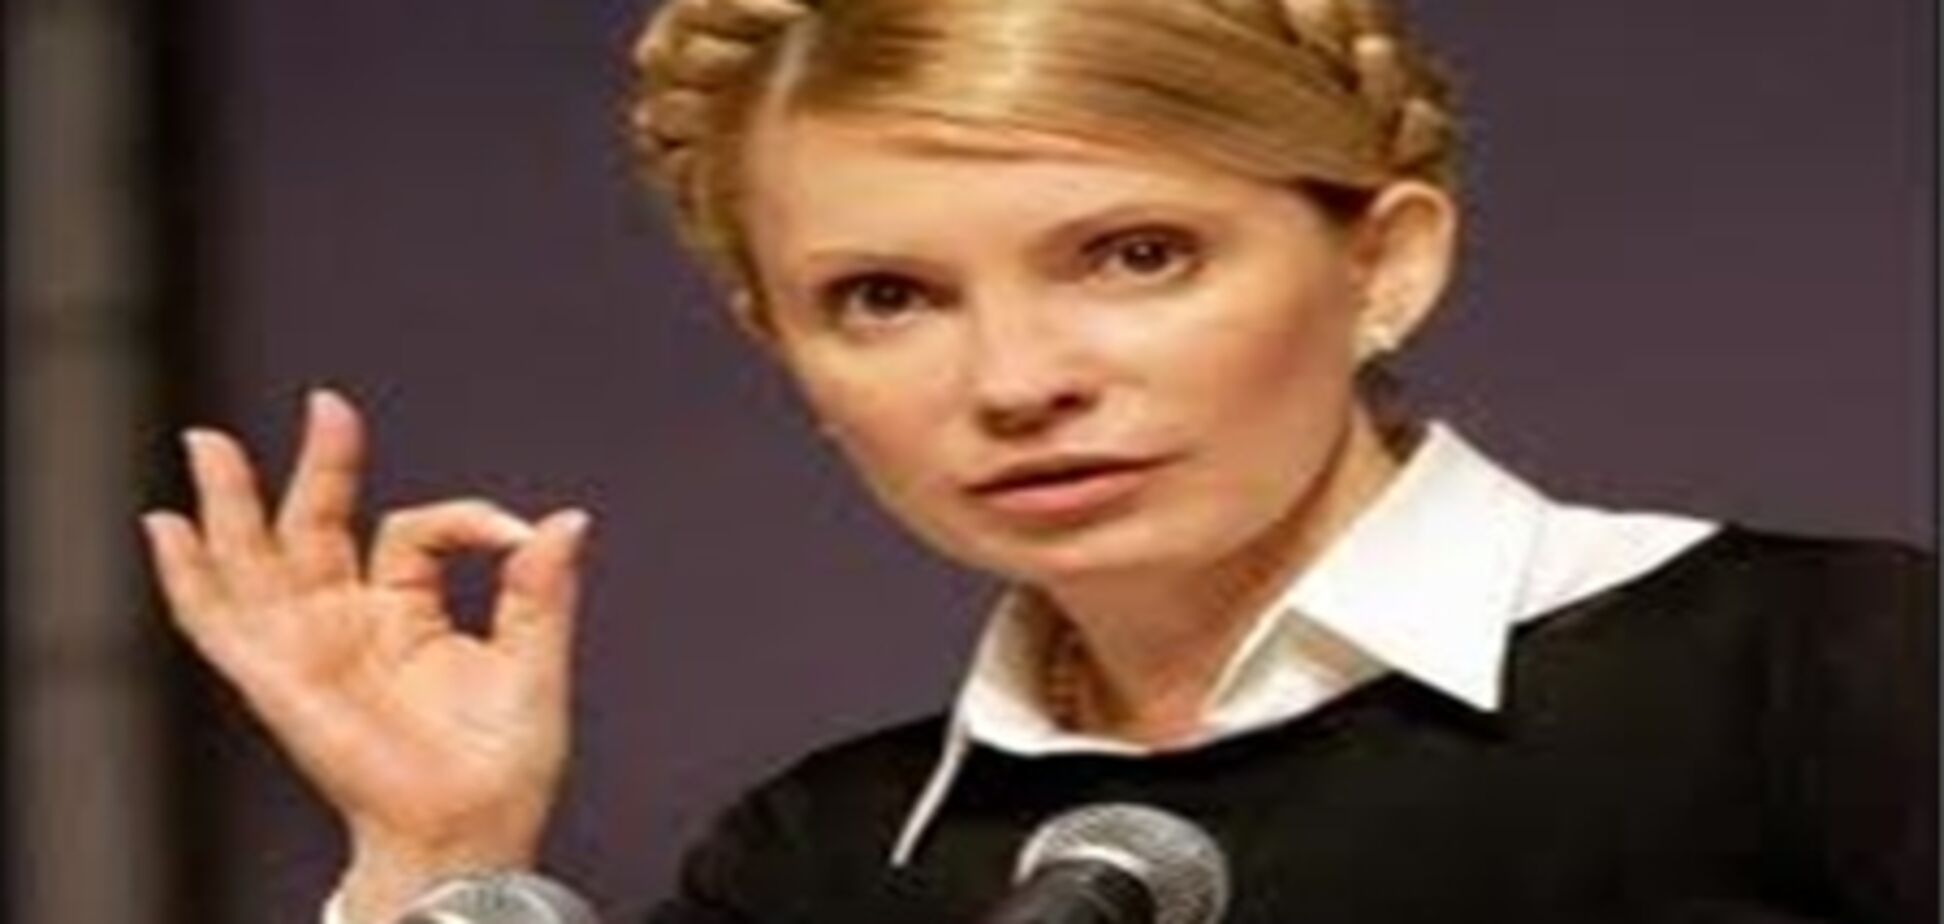 Комфорт на зоні обійдеться від $ 300, а сидіти в СІЗО, як Тимошенко, - від $ 1000